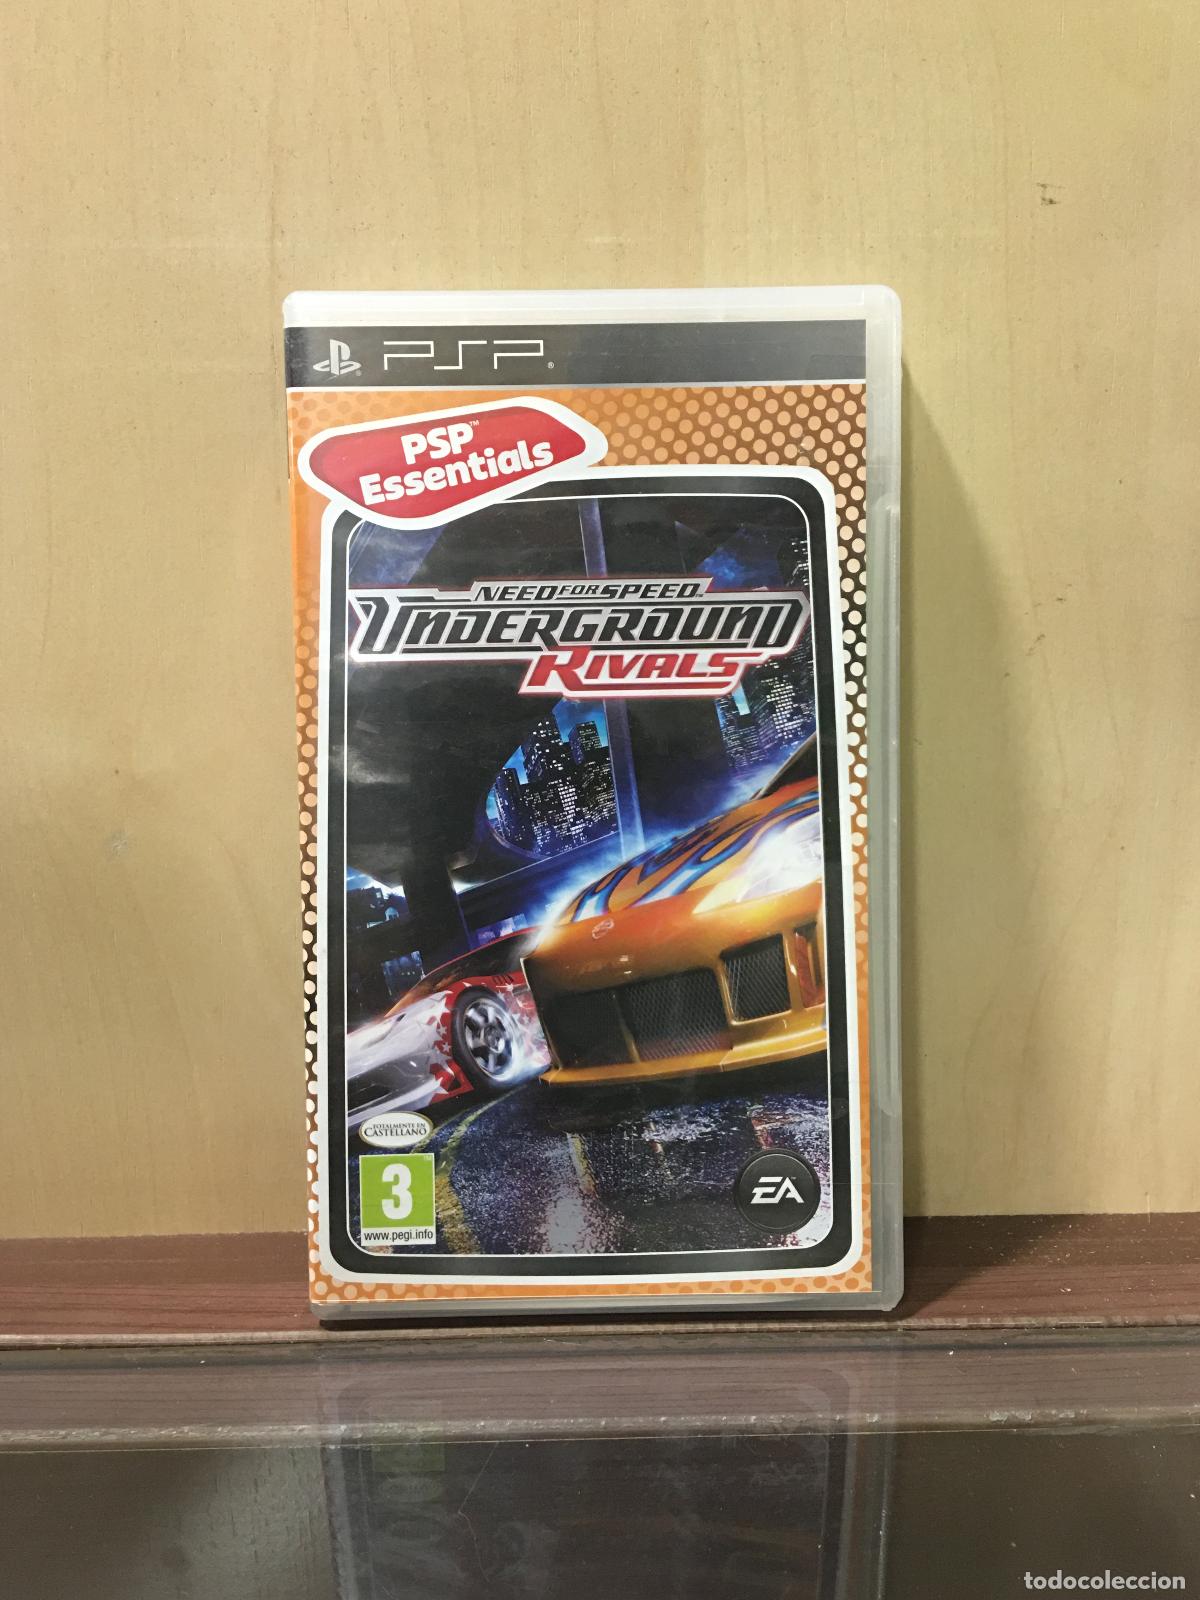 Need For Speed Underground Rivals (Essentials) /PSP